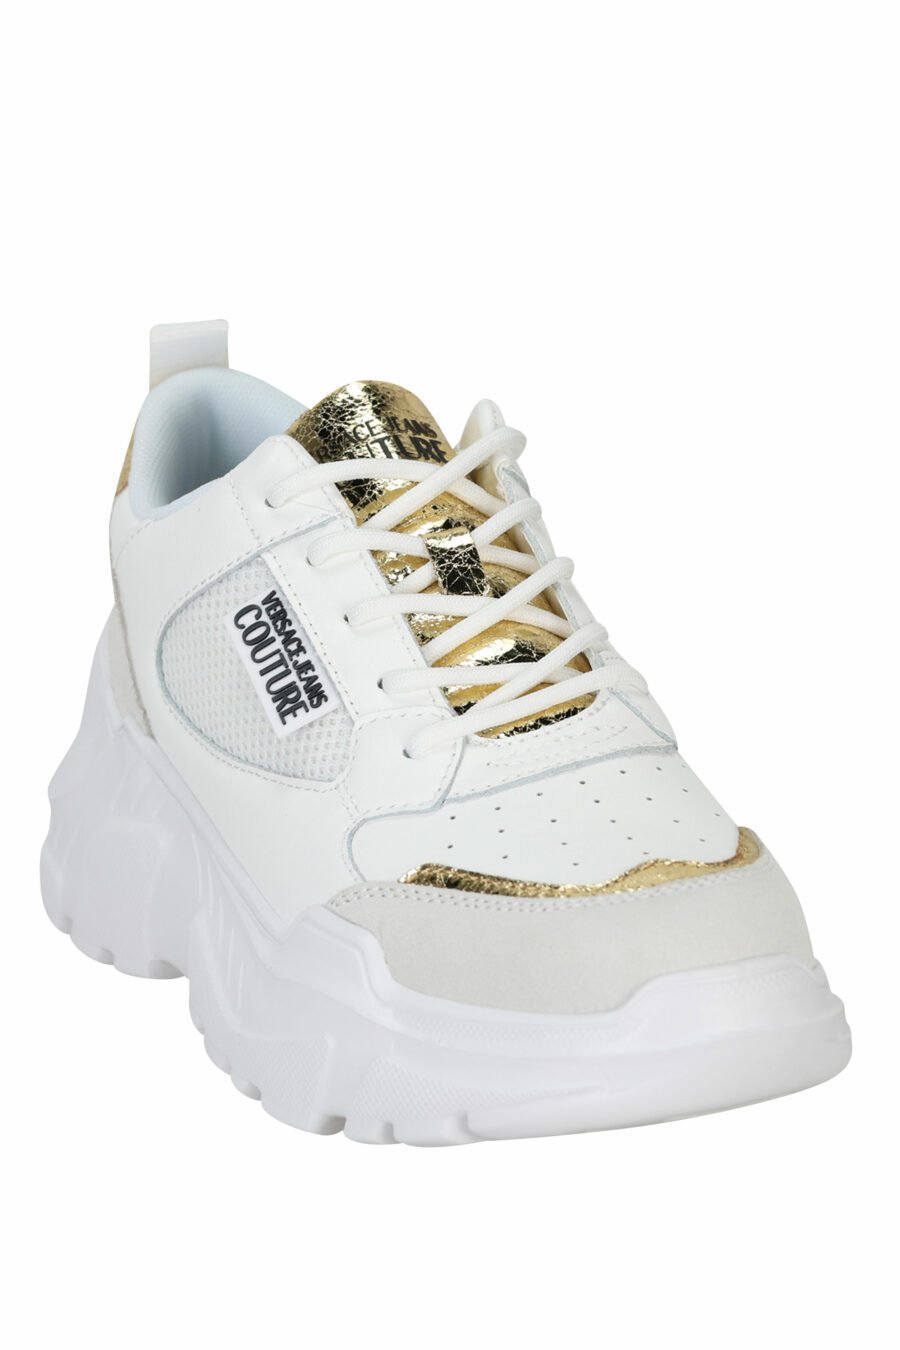 Zapatillas blancas mix con detalles dorados y plataforma - 8052019604764 1